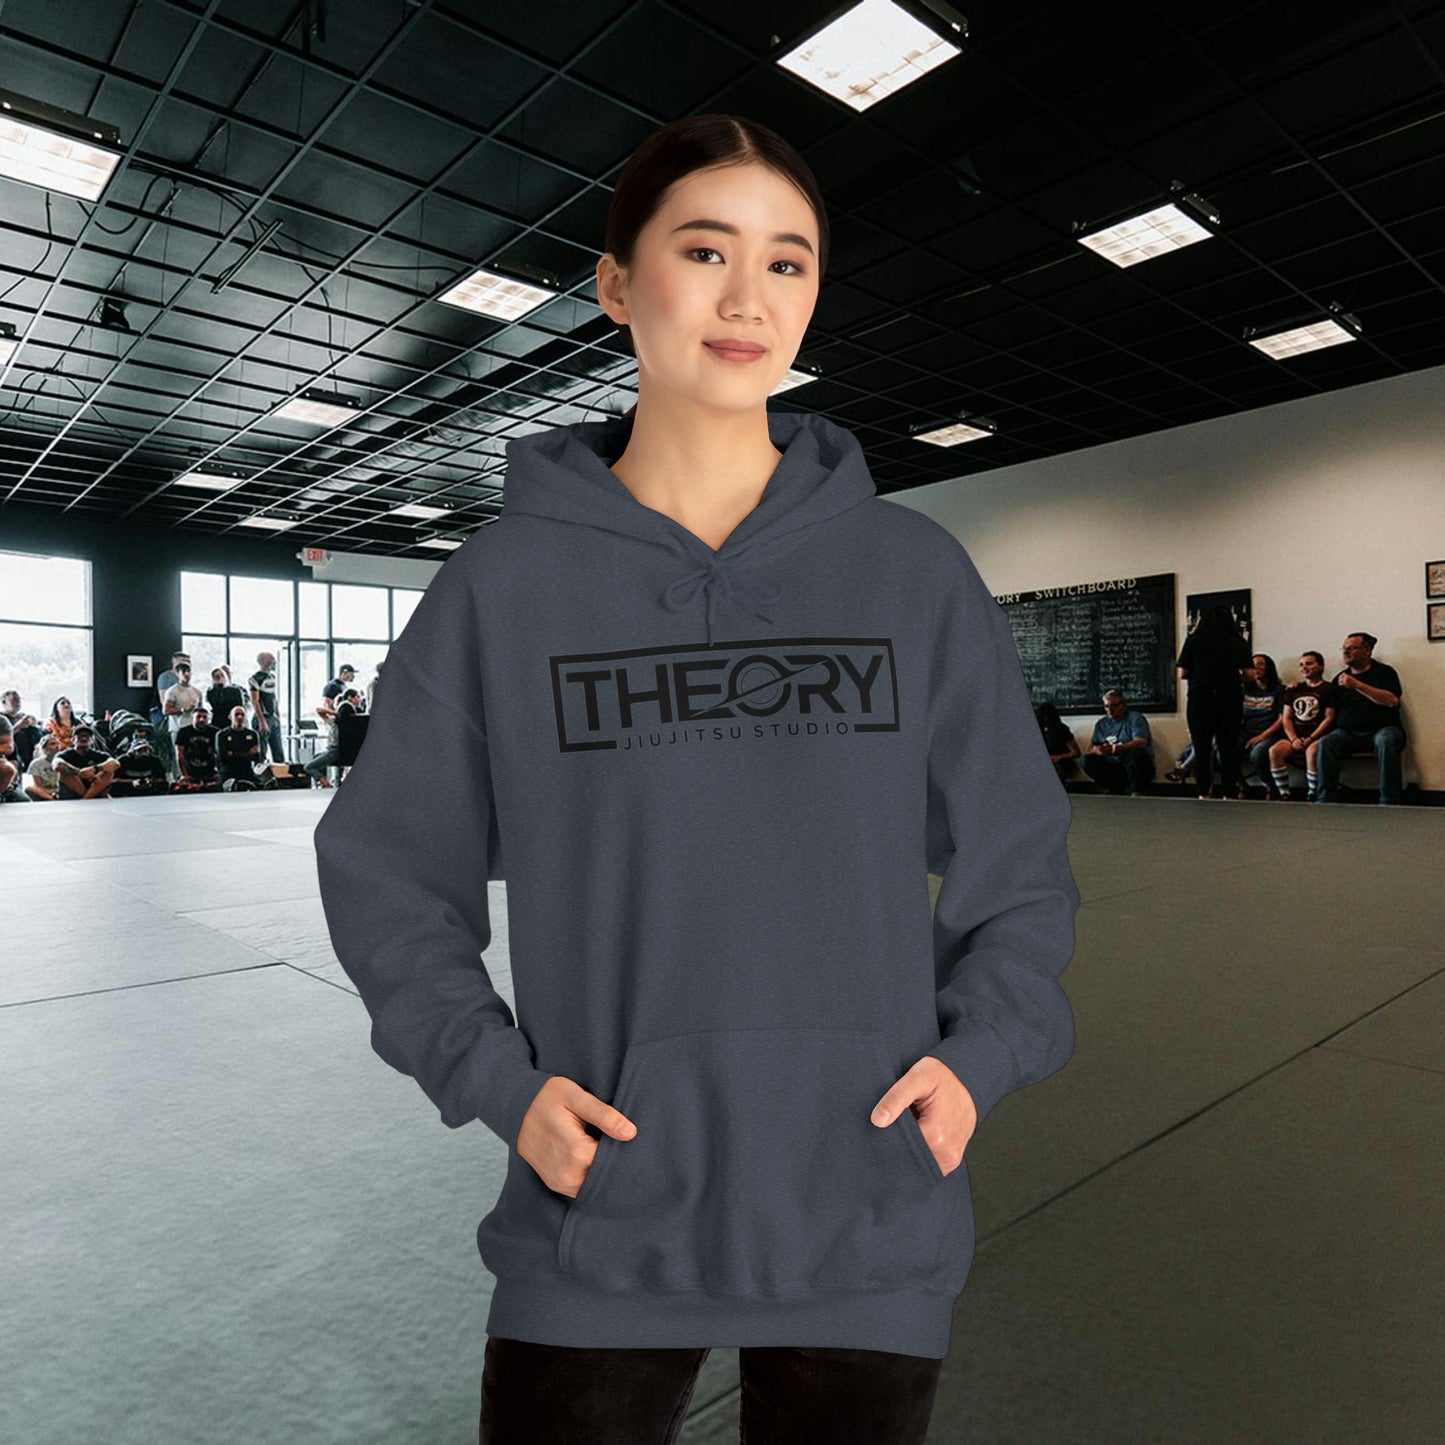 Theory Jiu-Jitsu Studio Logo Sweatshirt